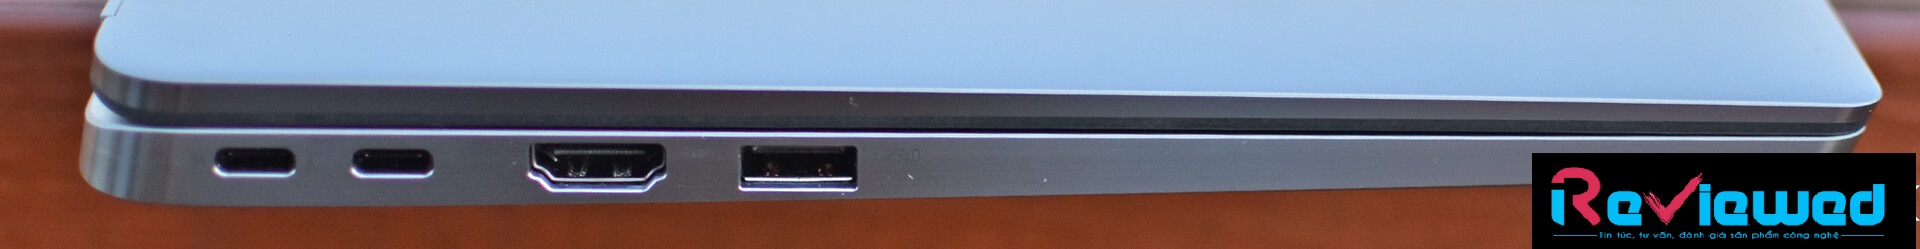 Đánh giá Dell Latitude 7400 2-trong-1: Một chiếc laptop tiệm cận sự hoàn hảo, Chuyên trang tư vấn laptop